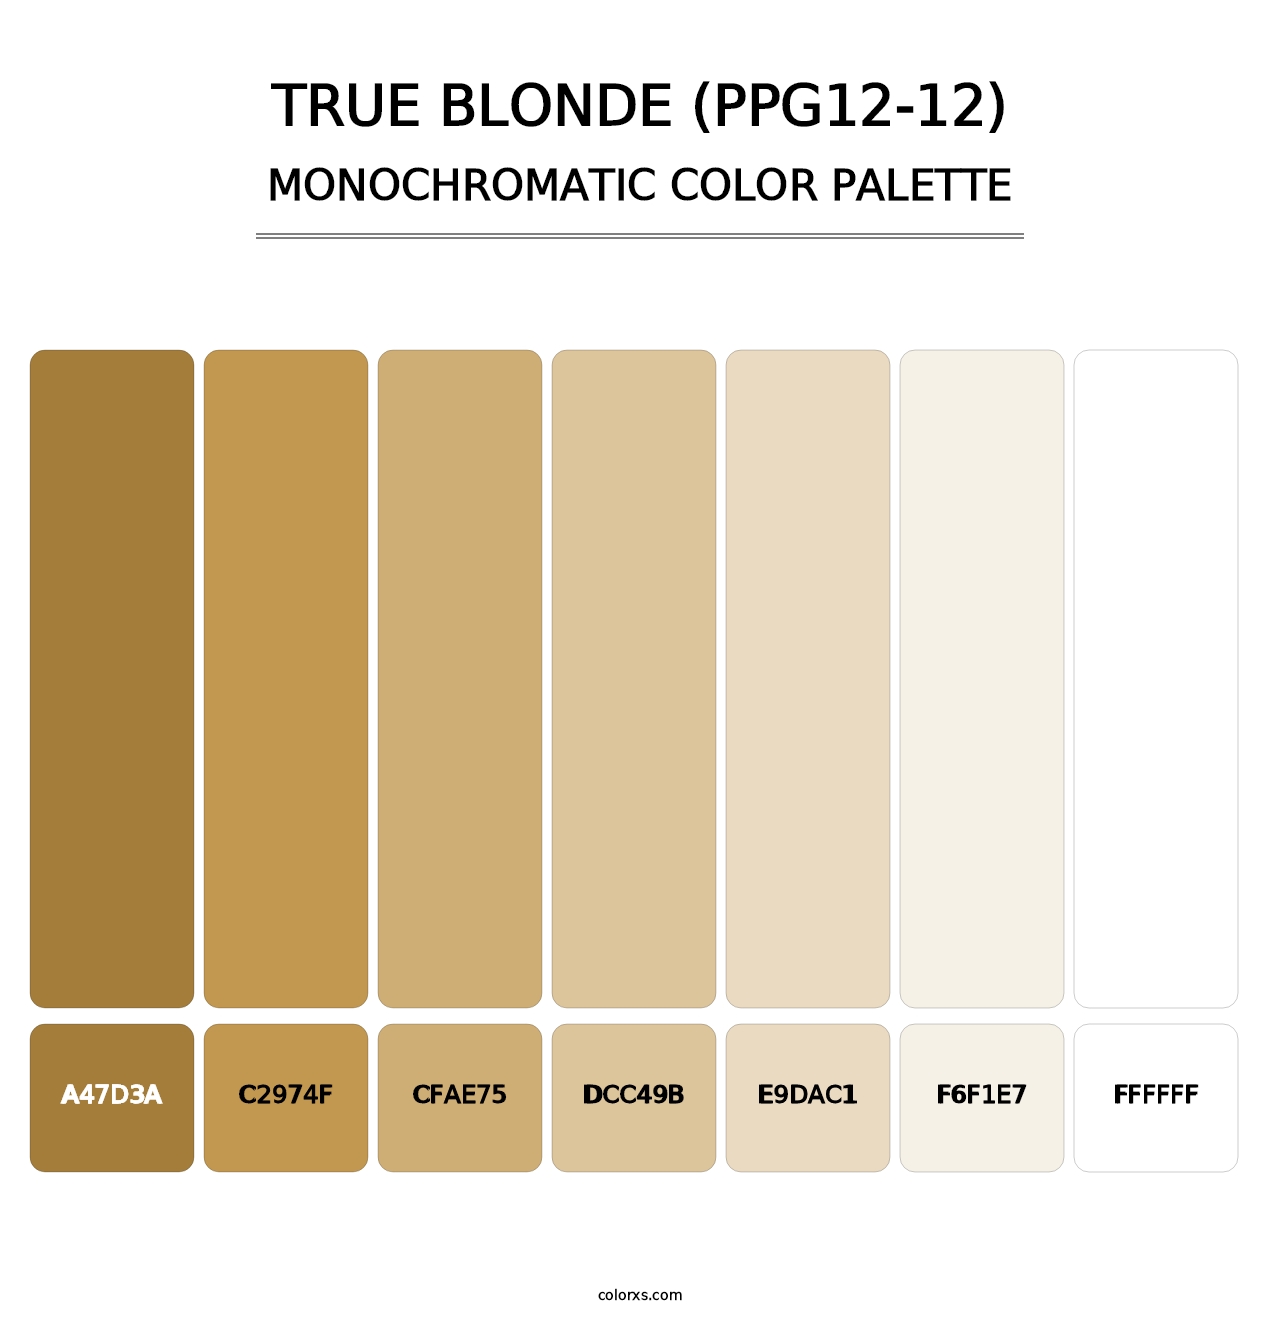 True Blonde (PPG12-12) - Monochromatic Color Palette